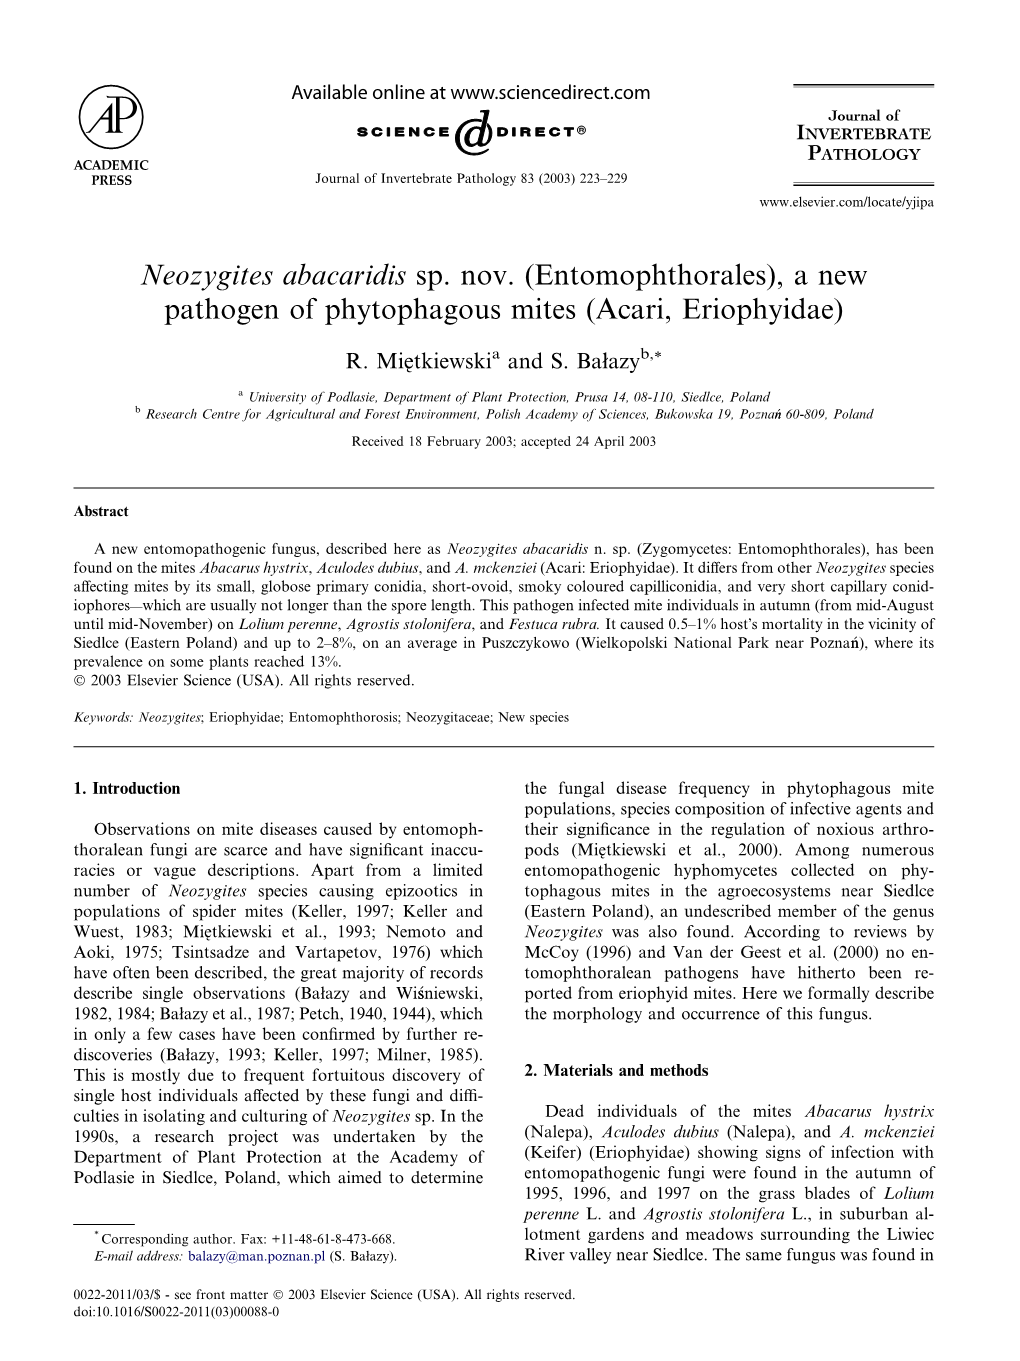 Neozygites Abacaridis Sp. Nov. (Entomophthorales), a New Pathogen of Phytophagous Mites (Acari, Eriophyidae)